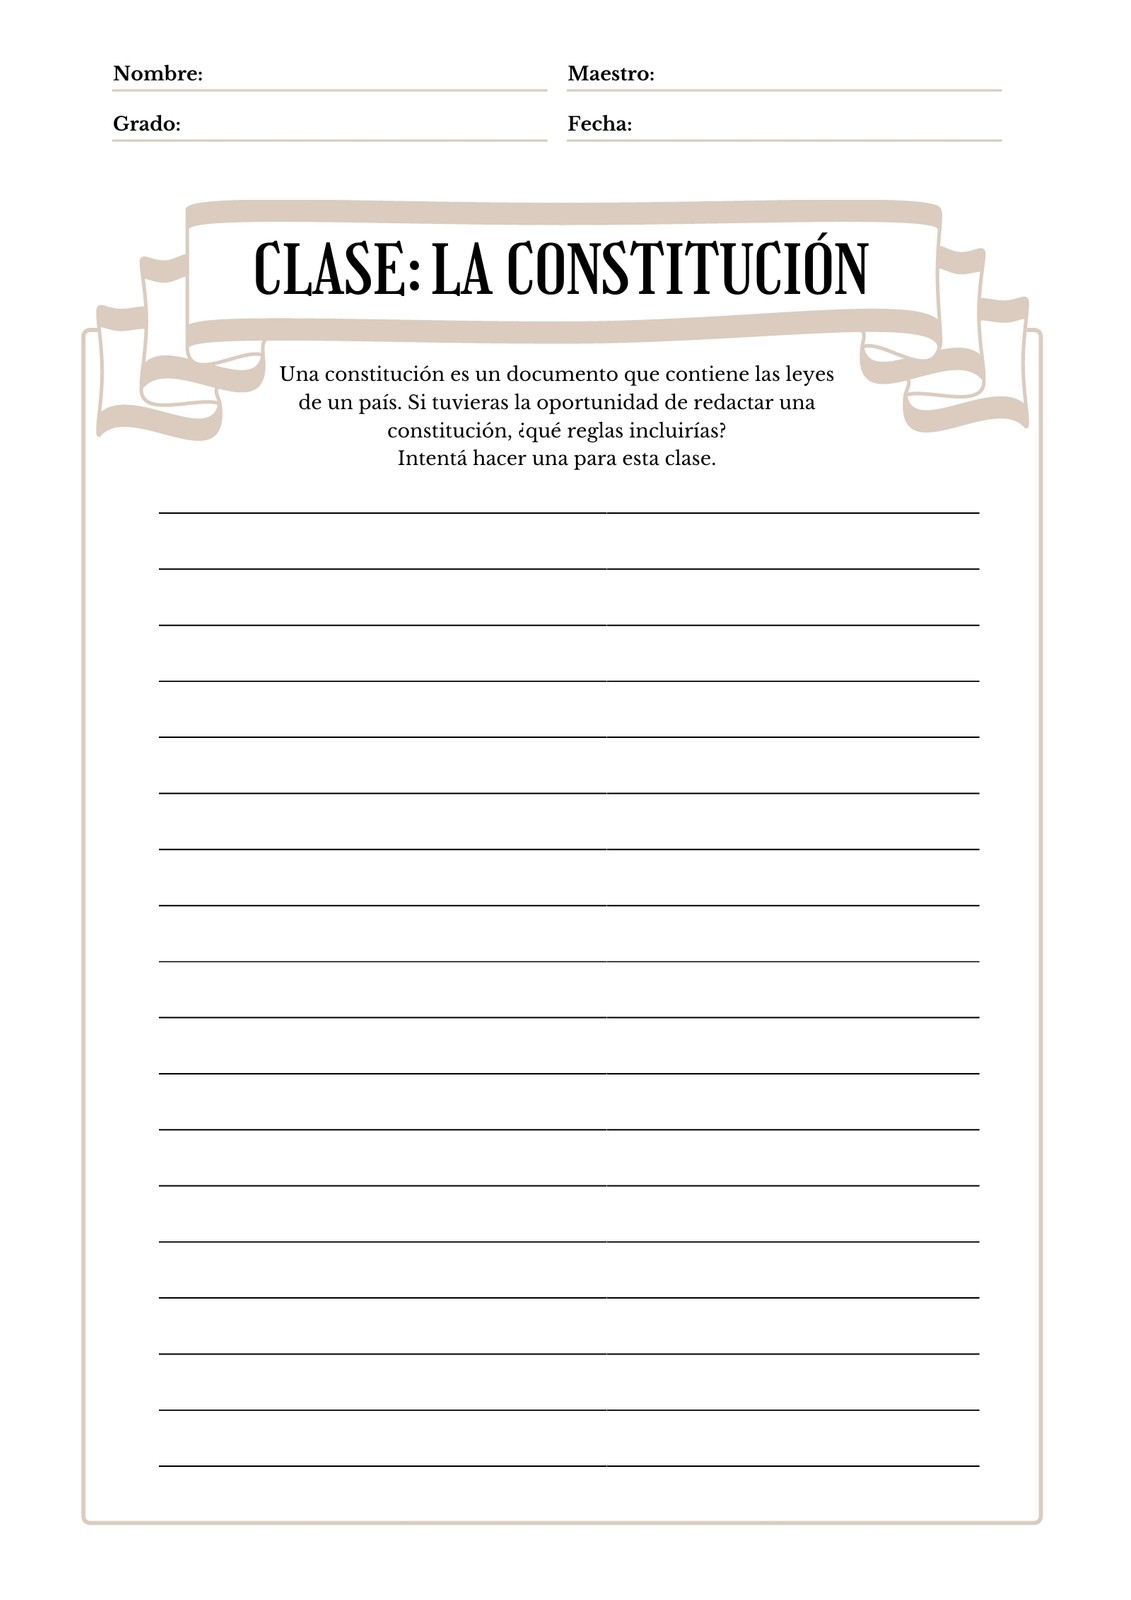 Cinta La Constitución Clase Escolar Hoja de Trabajo para Imprimir